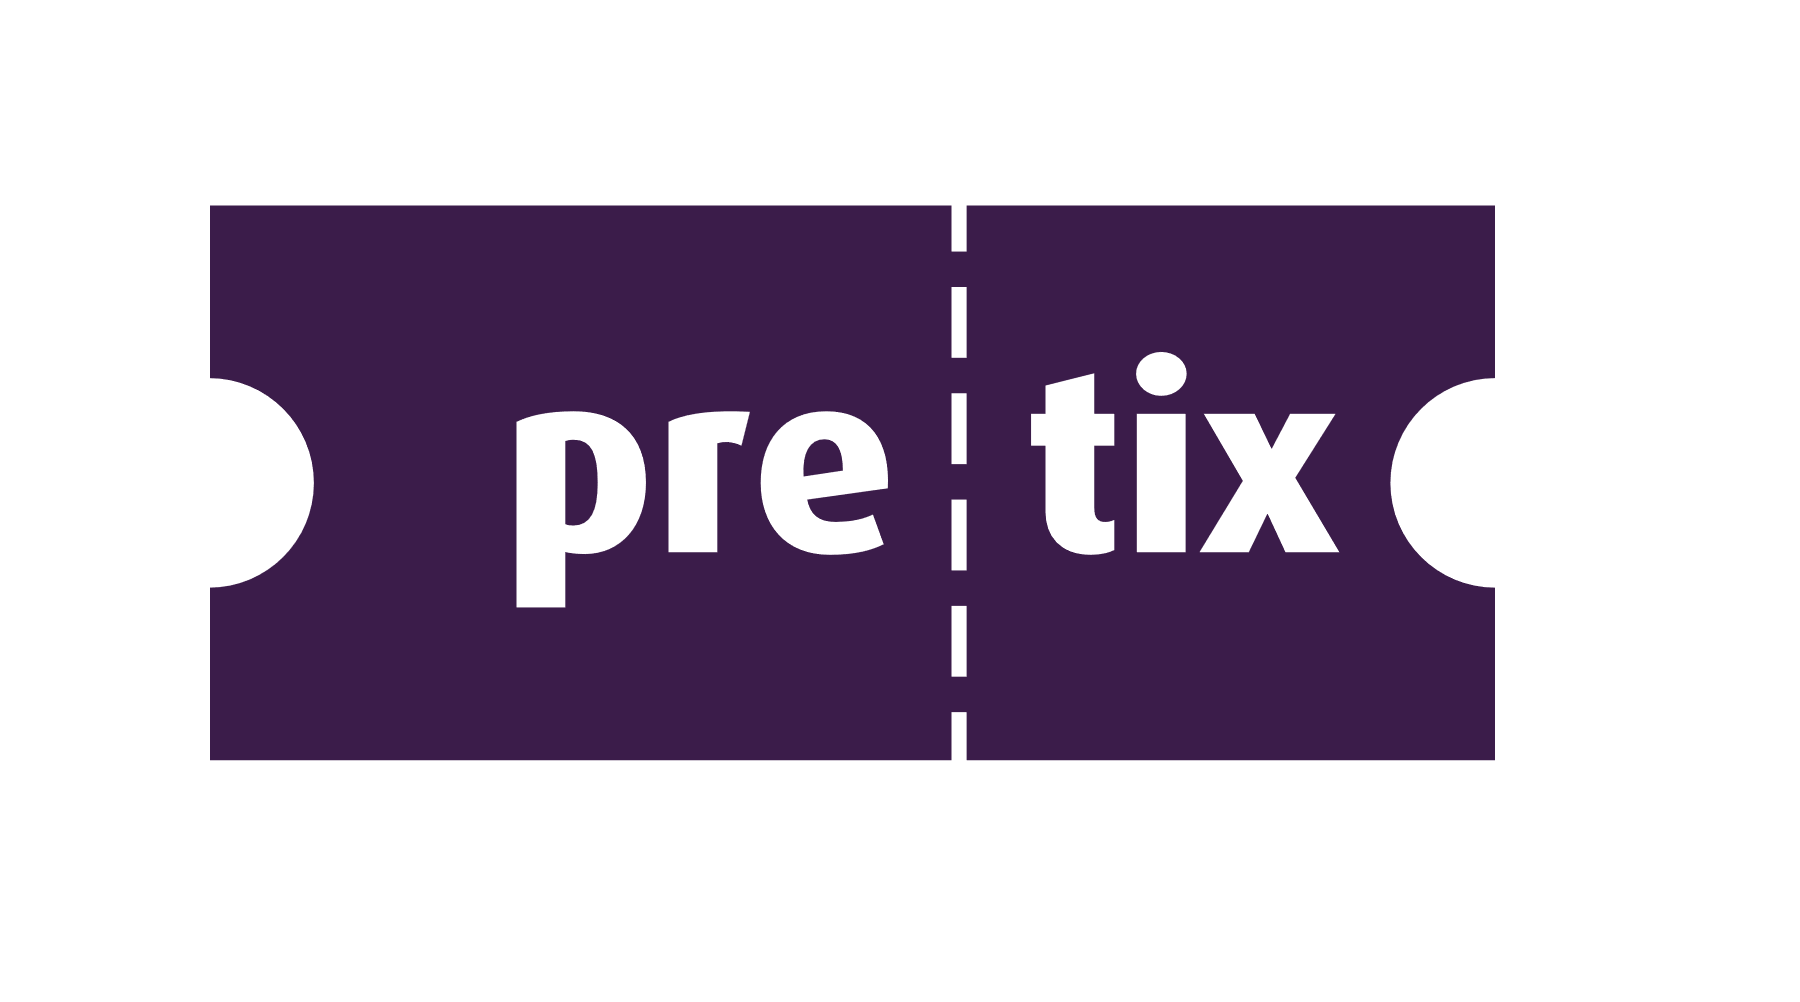 pretix - Prototype Fund